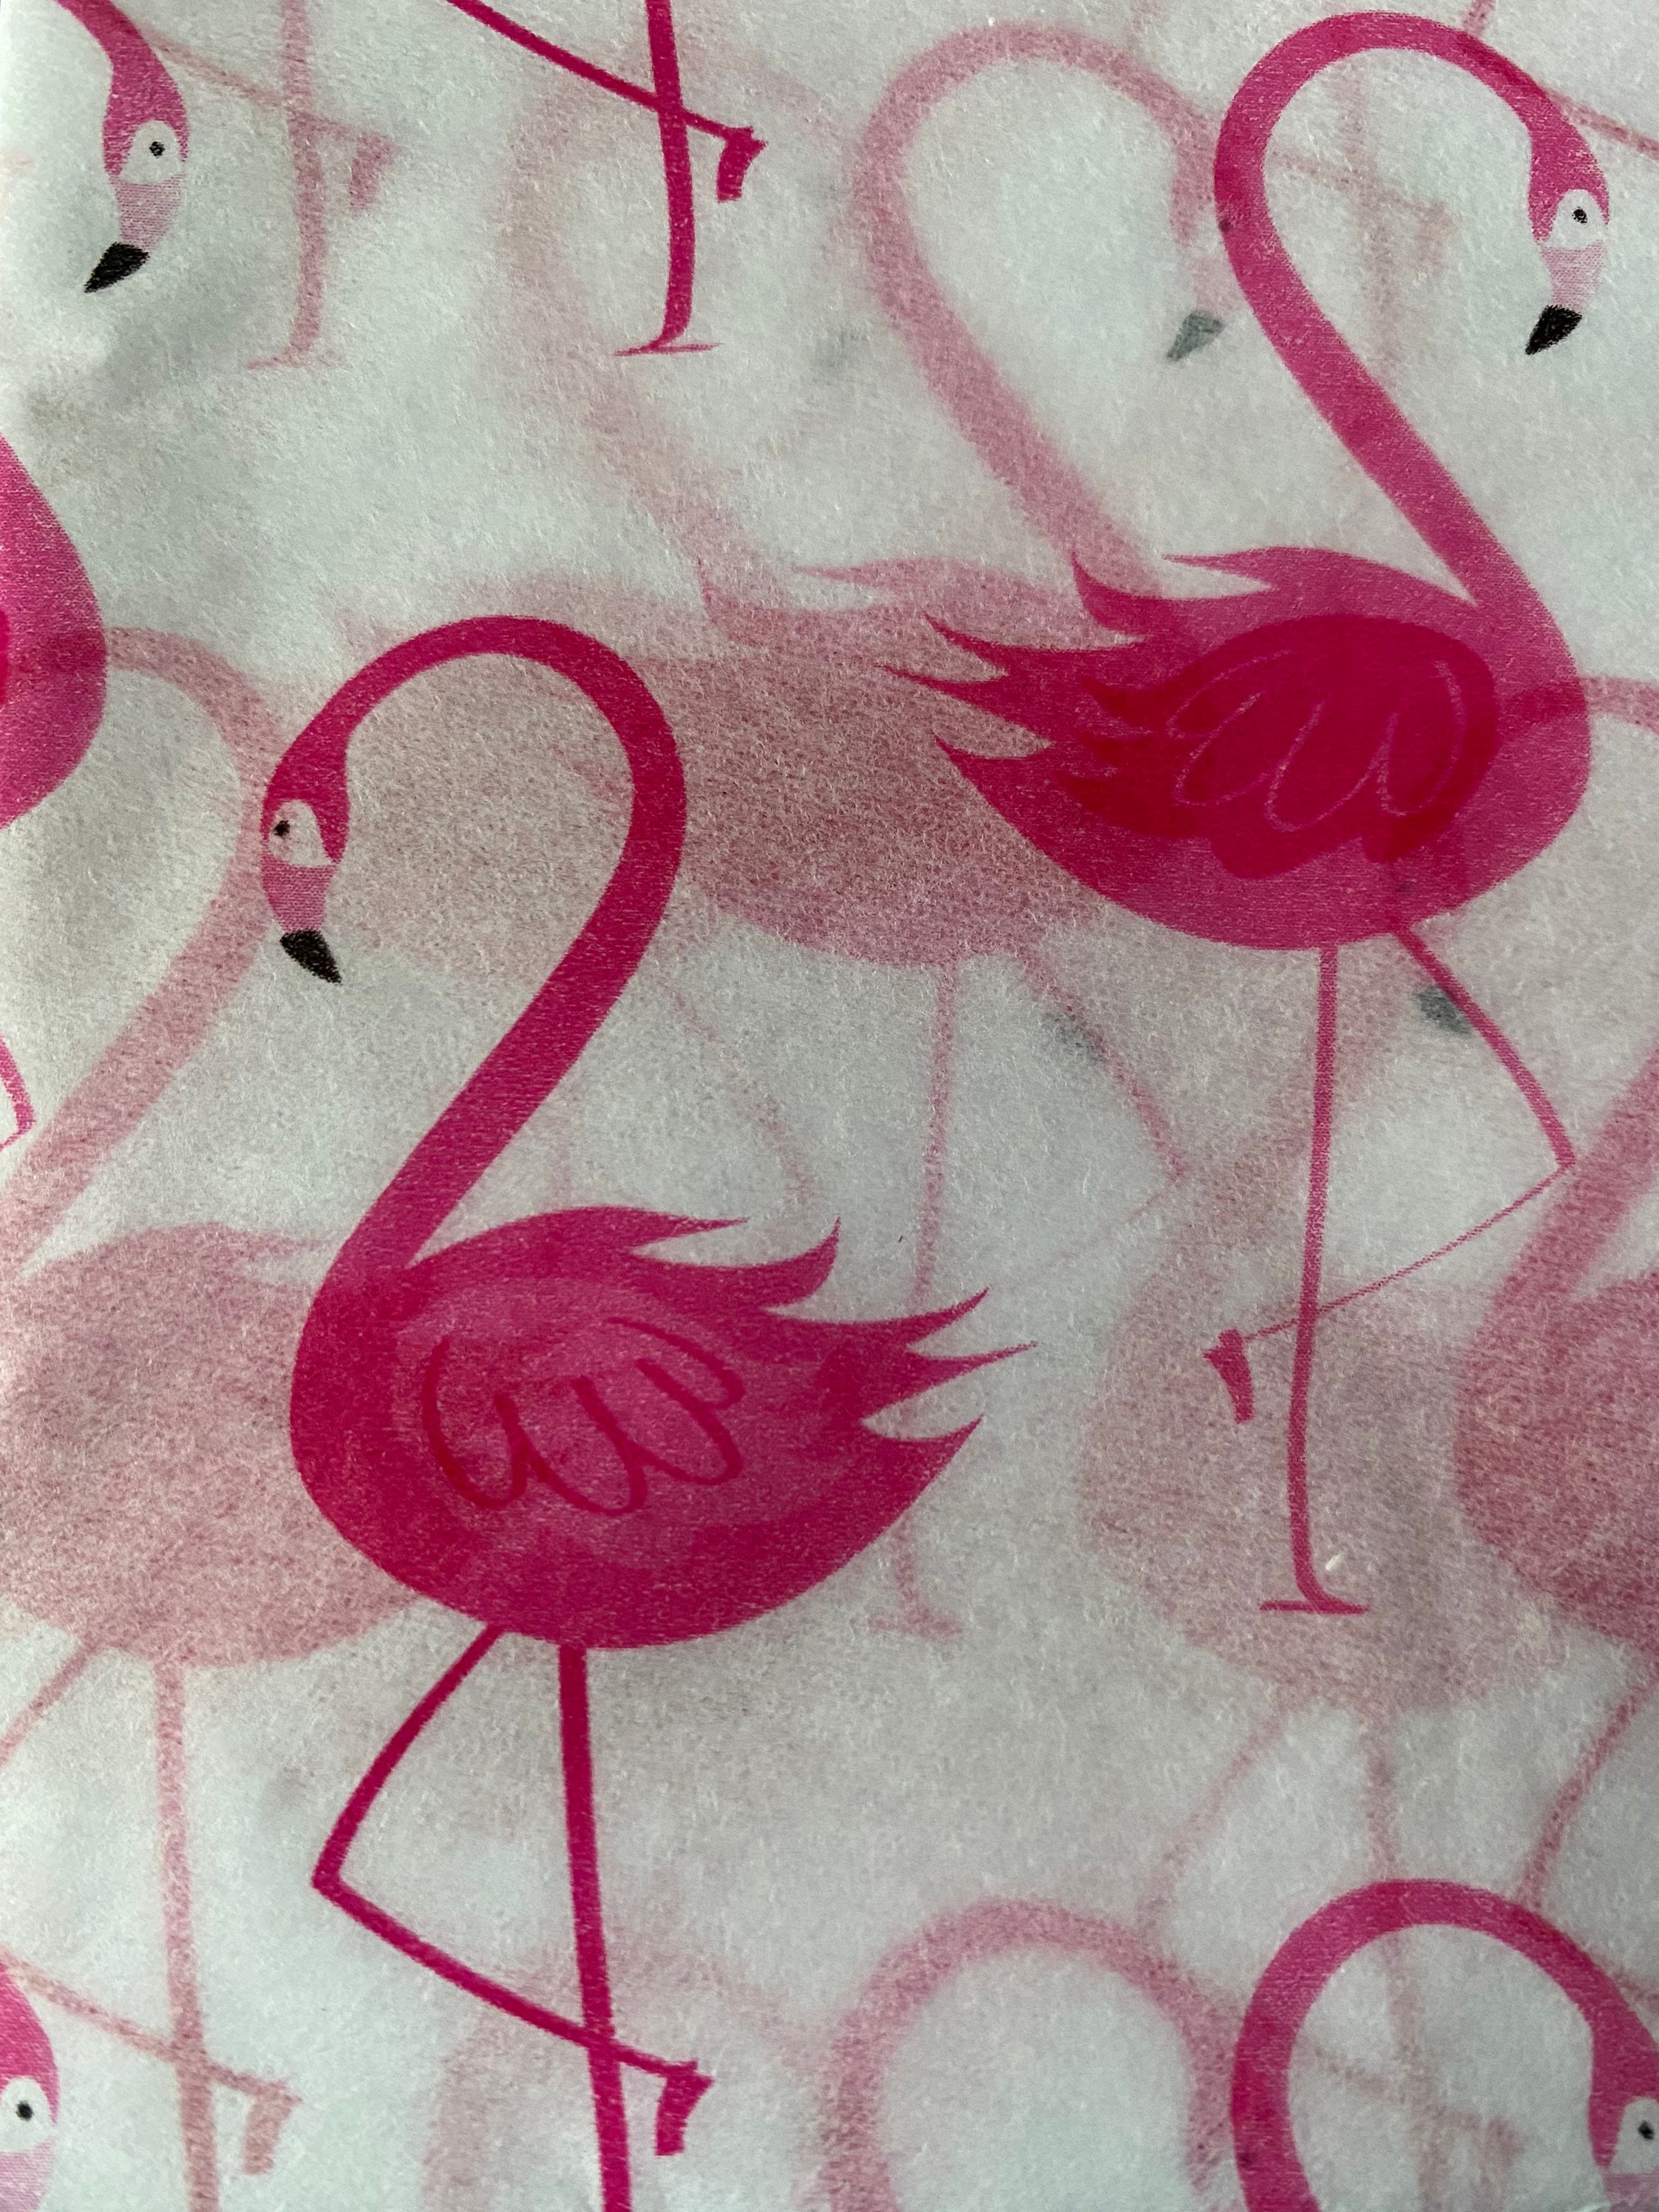 Flamingo Pink Tissue Paper